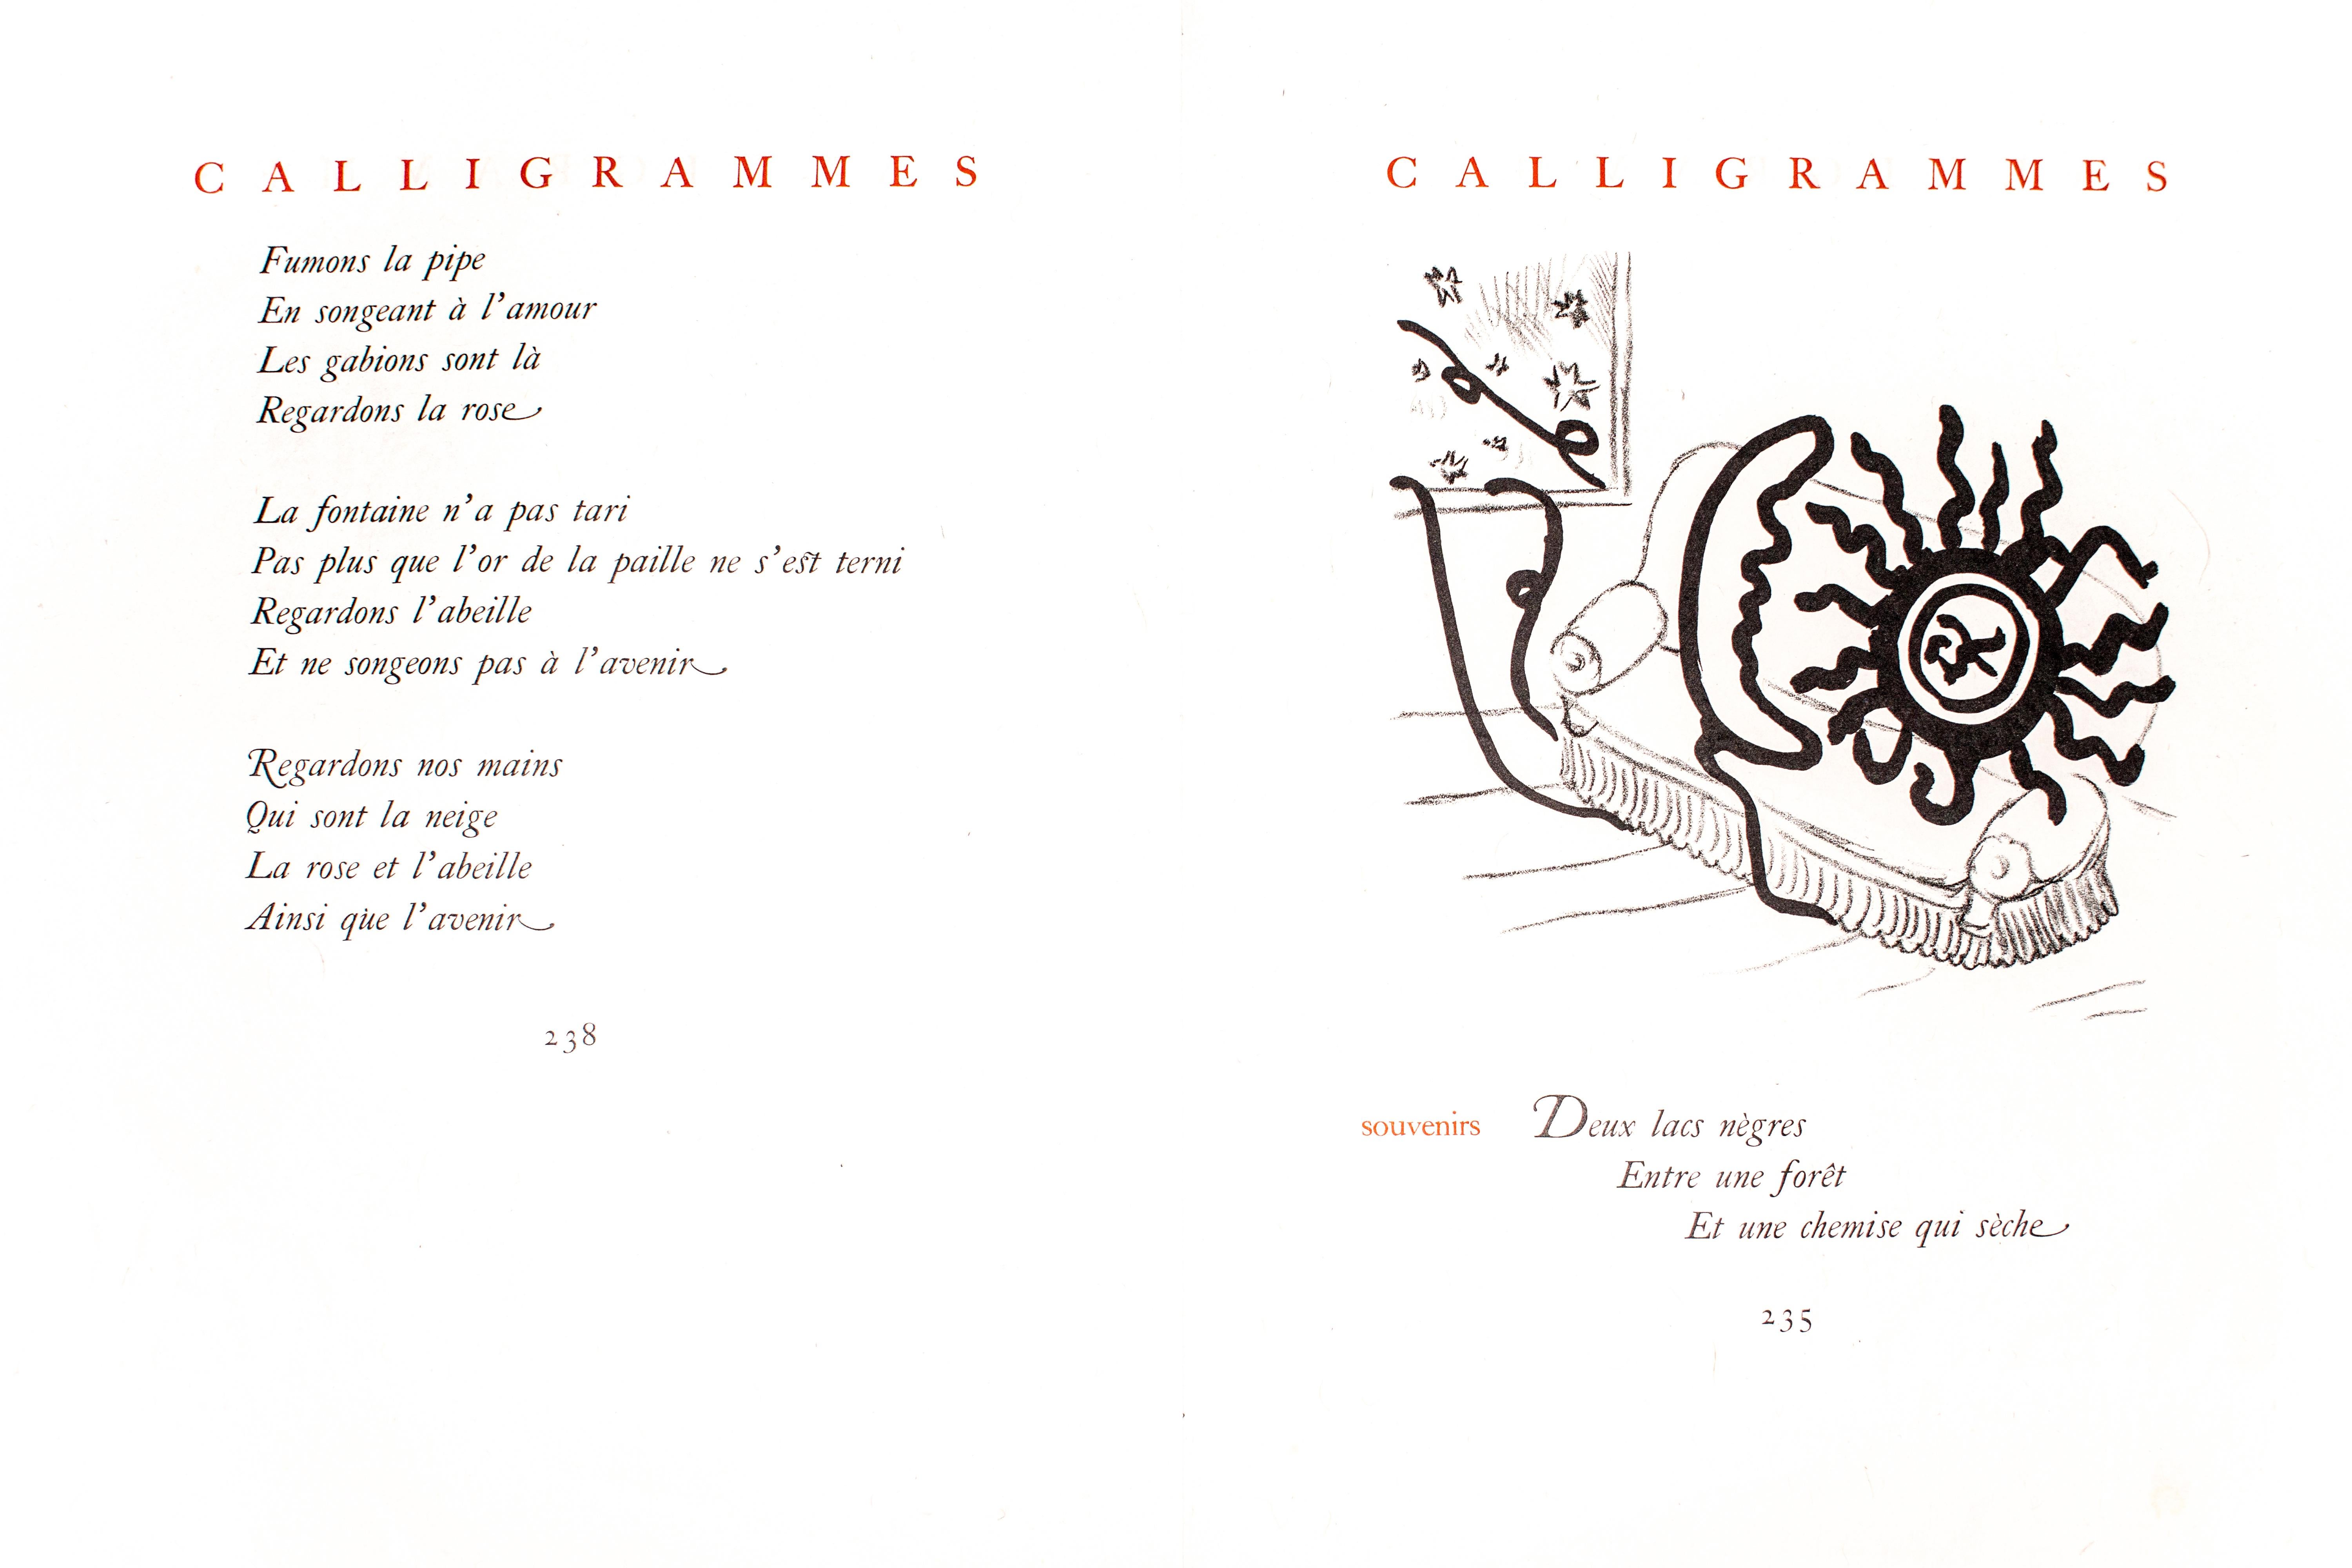 Calligrammes - Rare Book illustrated by Giorgio De Chirico - 1930 For Sale 6